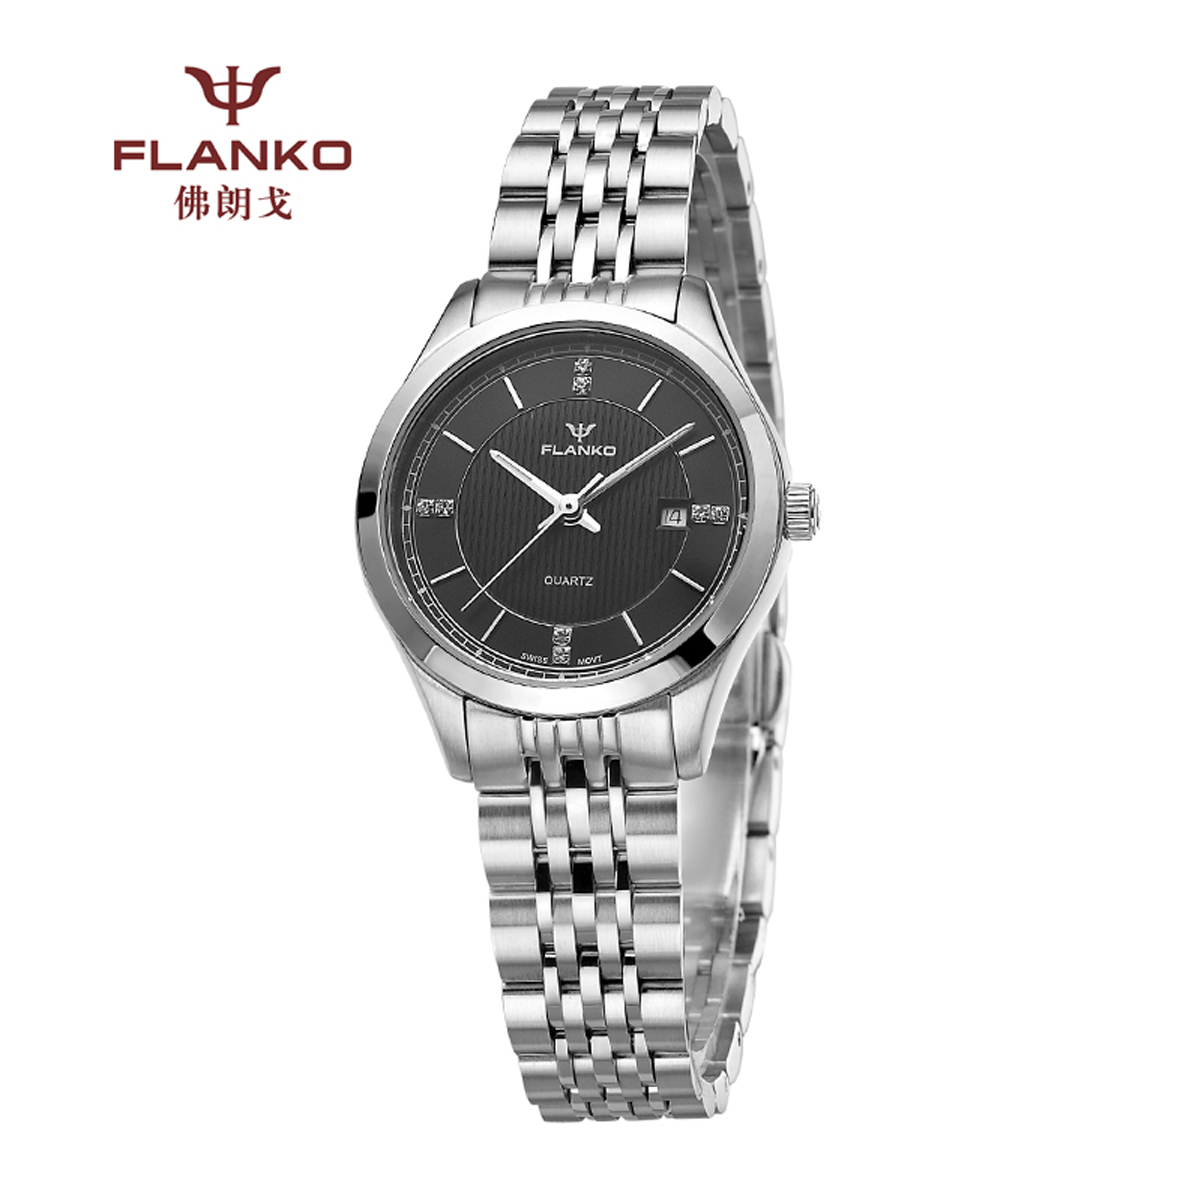 超薄的女式腕表促销价格_情侣表相关-深圳市佛朗戈科技有限公司